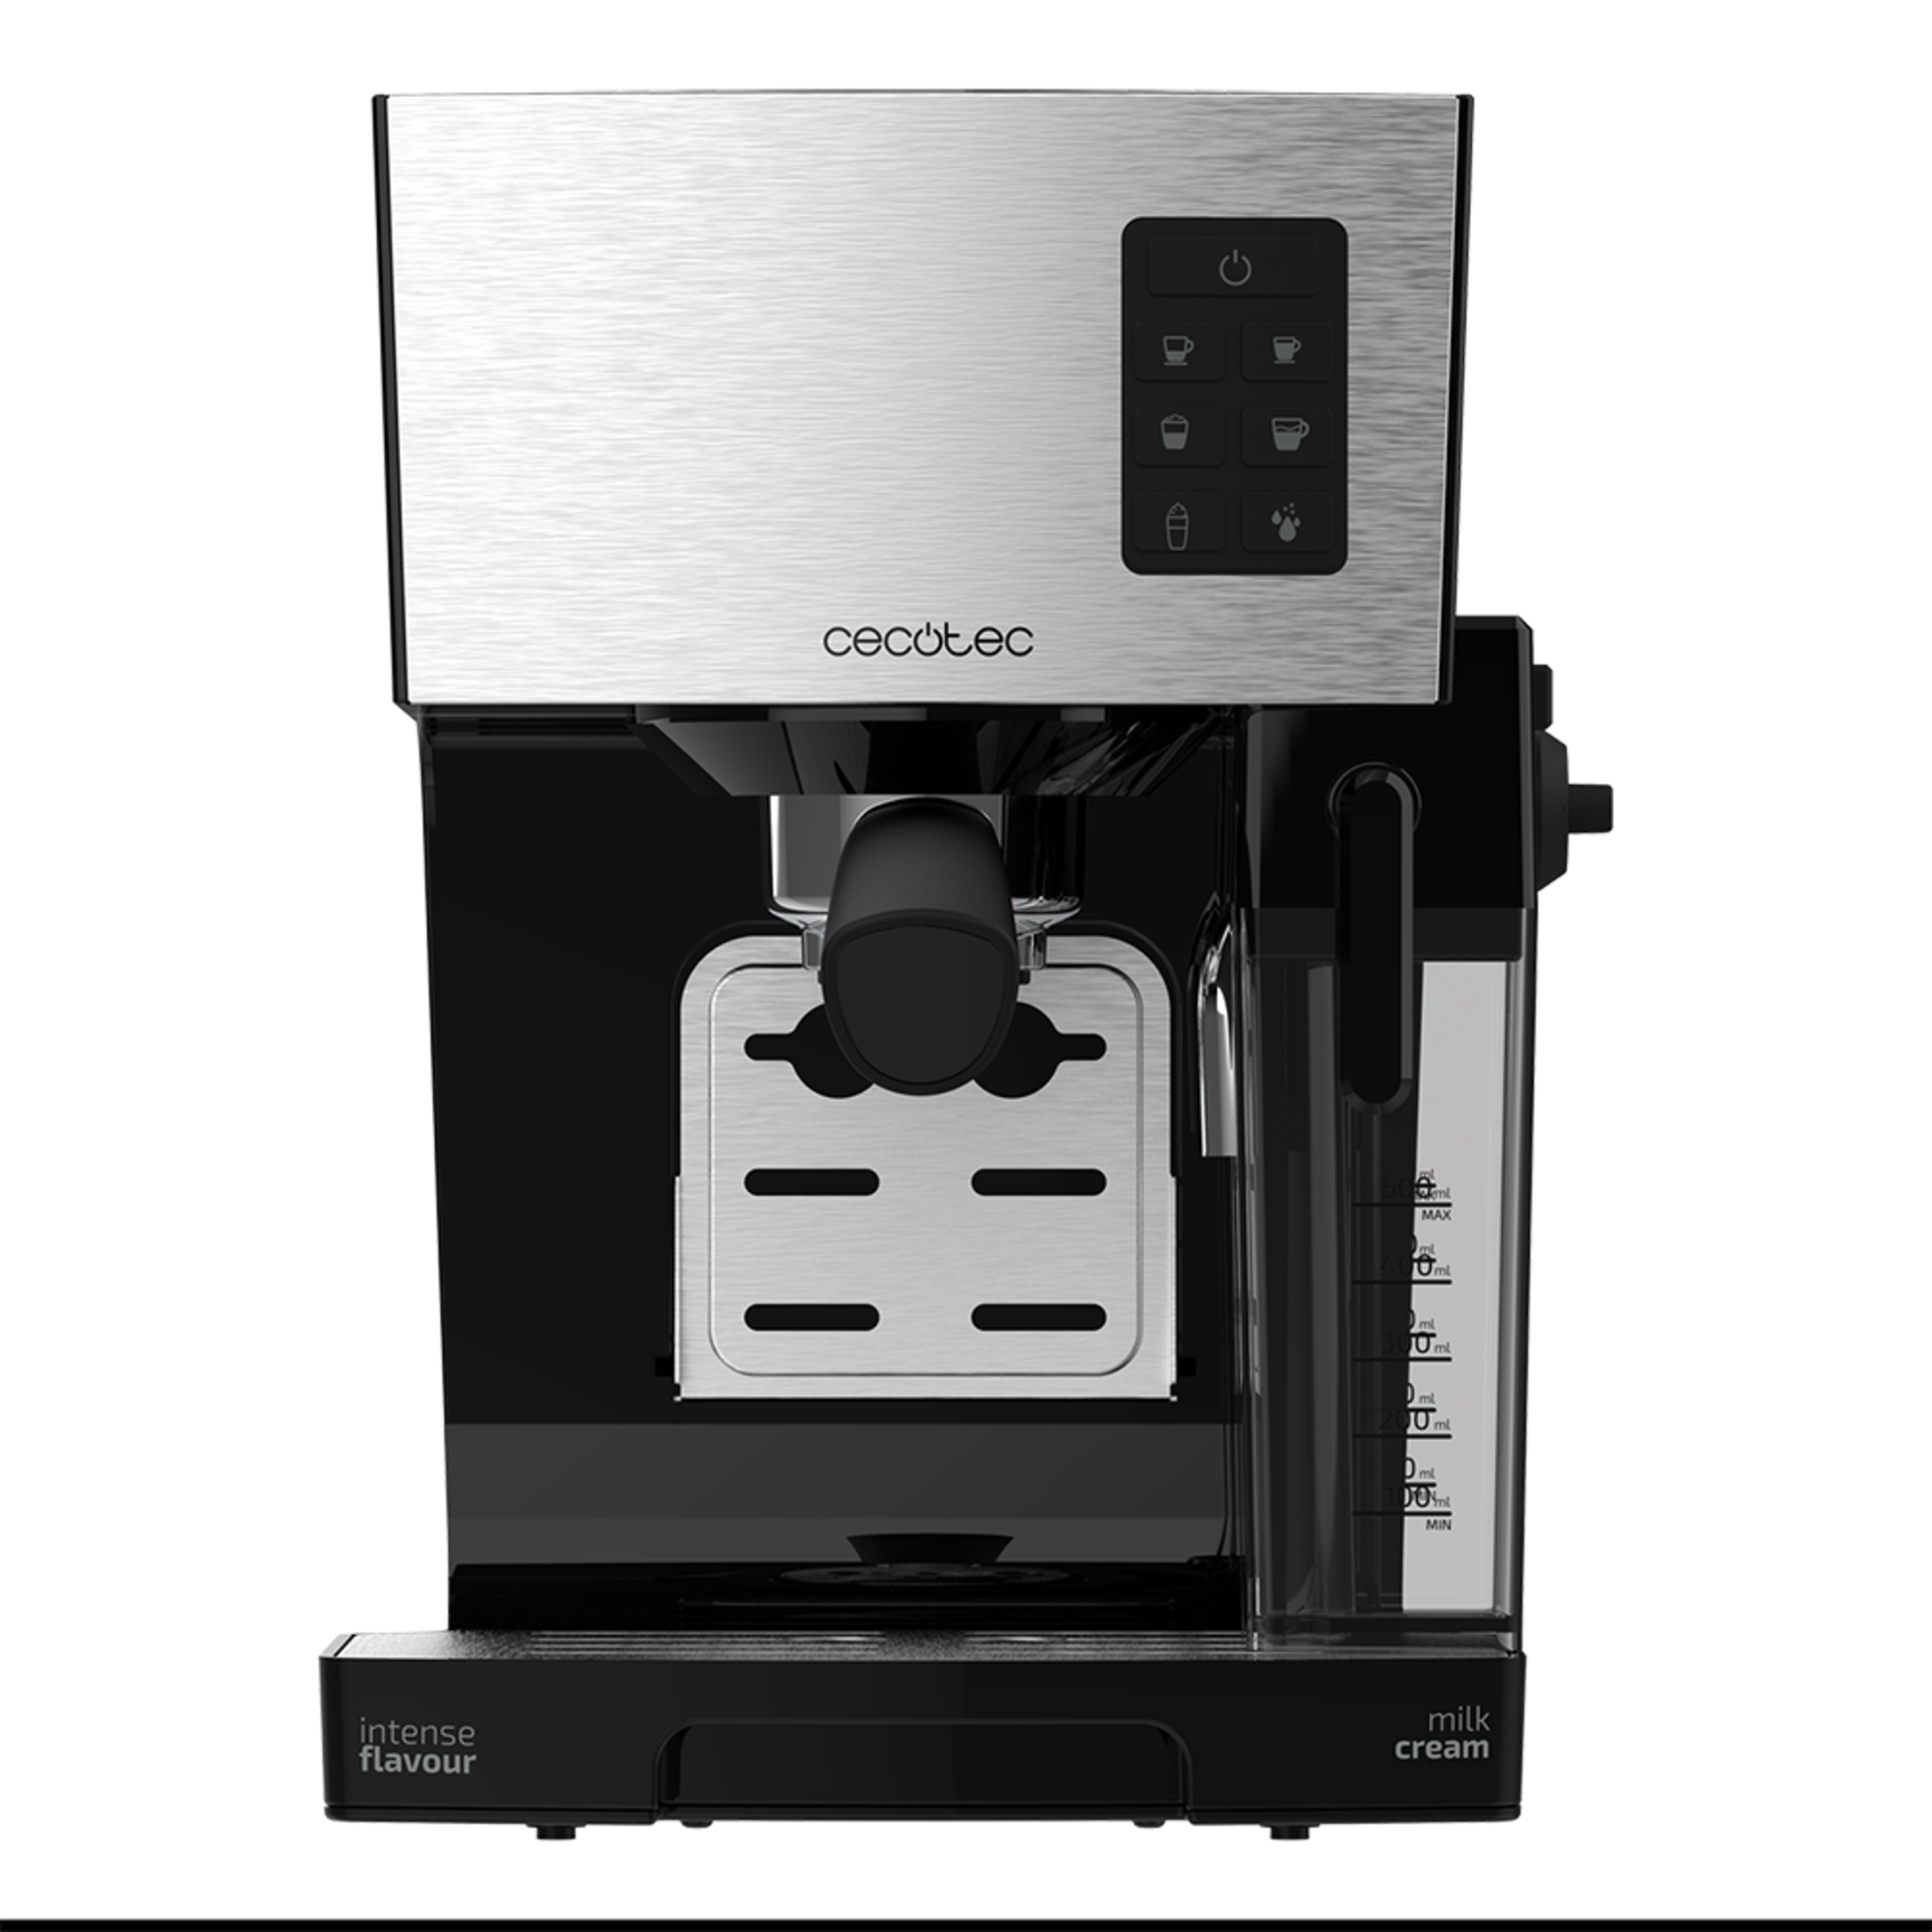 Power Instant-ccino Kaffeevollautomat Express, Milchtank, einstufiger Cappuccino, 20 Bar Druck und Thermoblock-System, Edelstahl